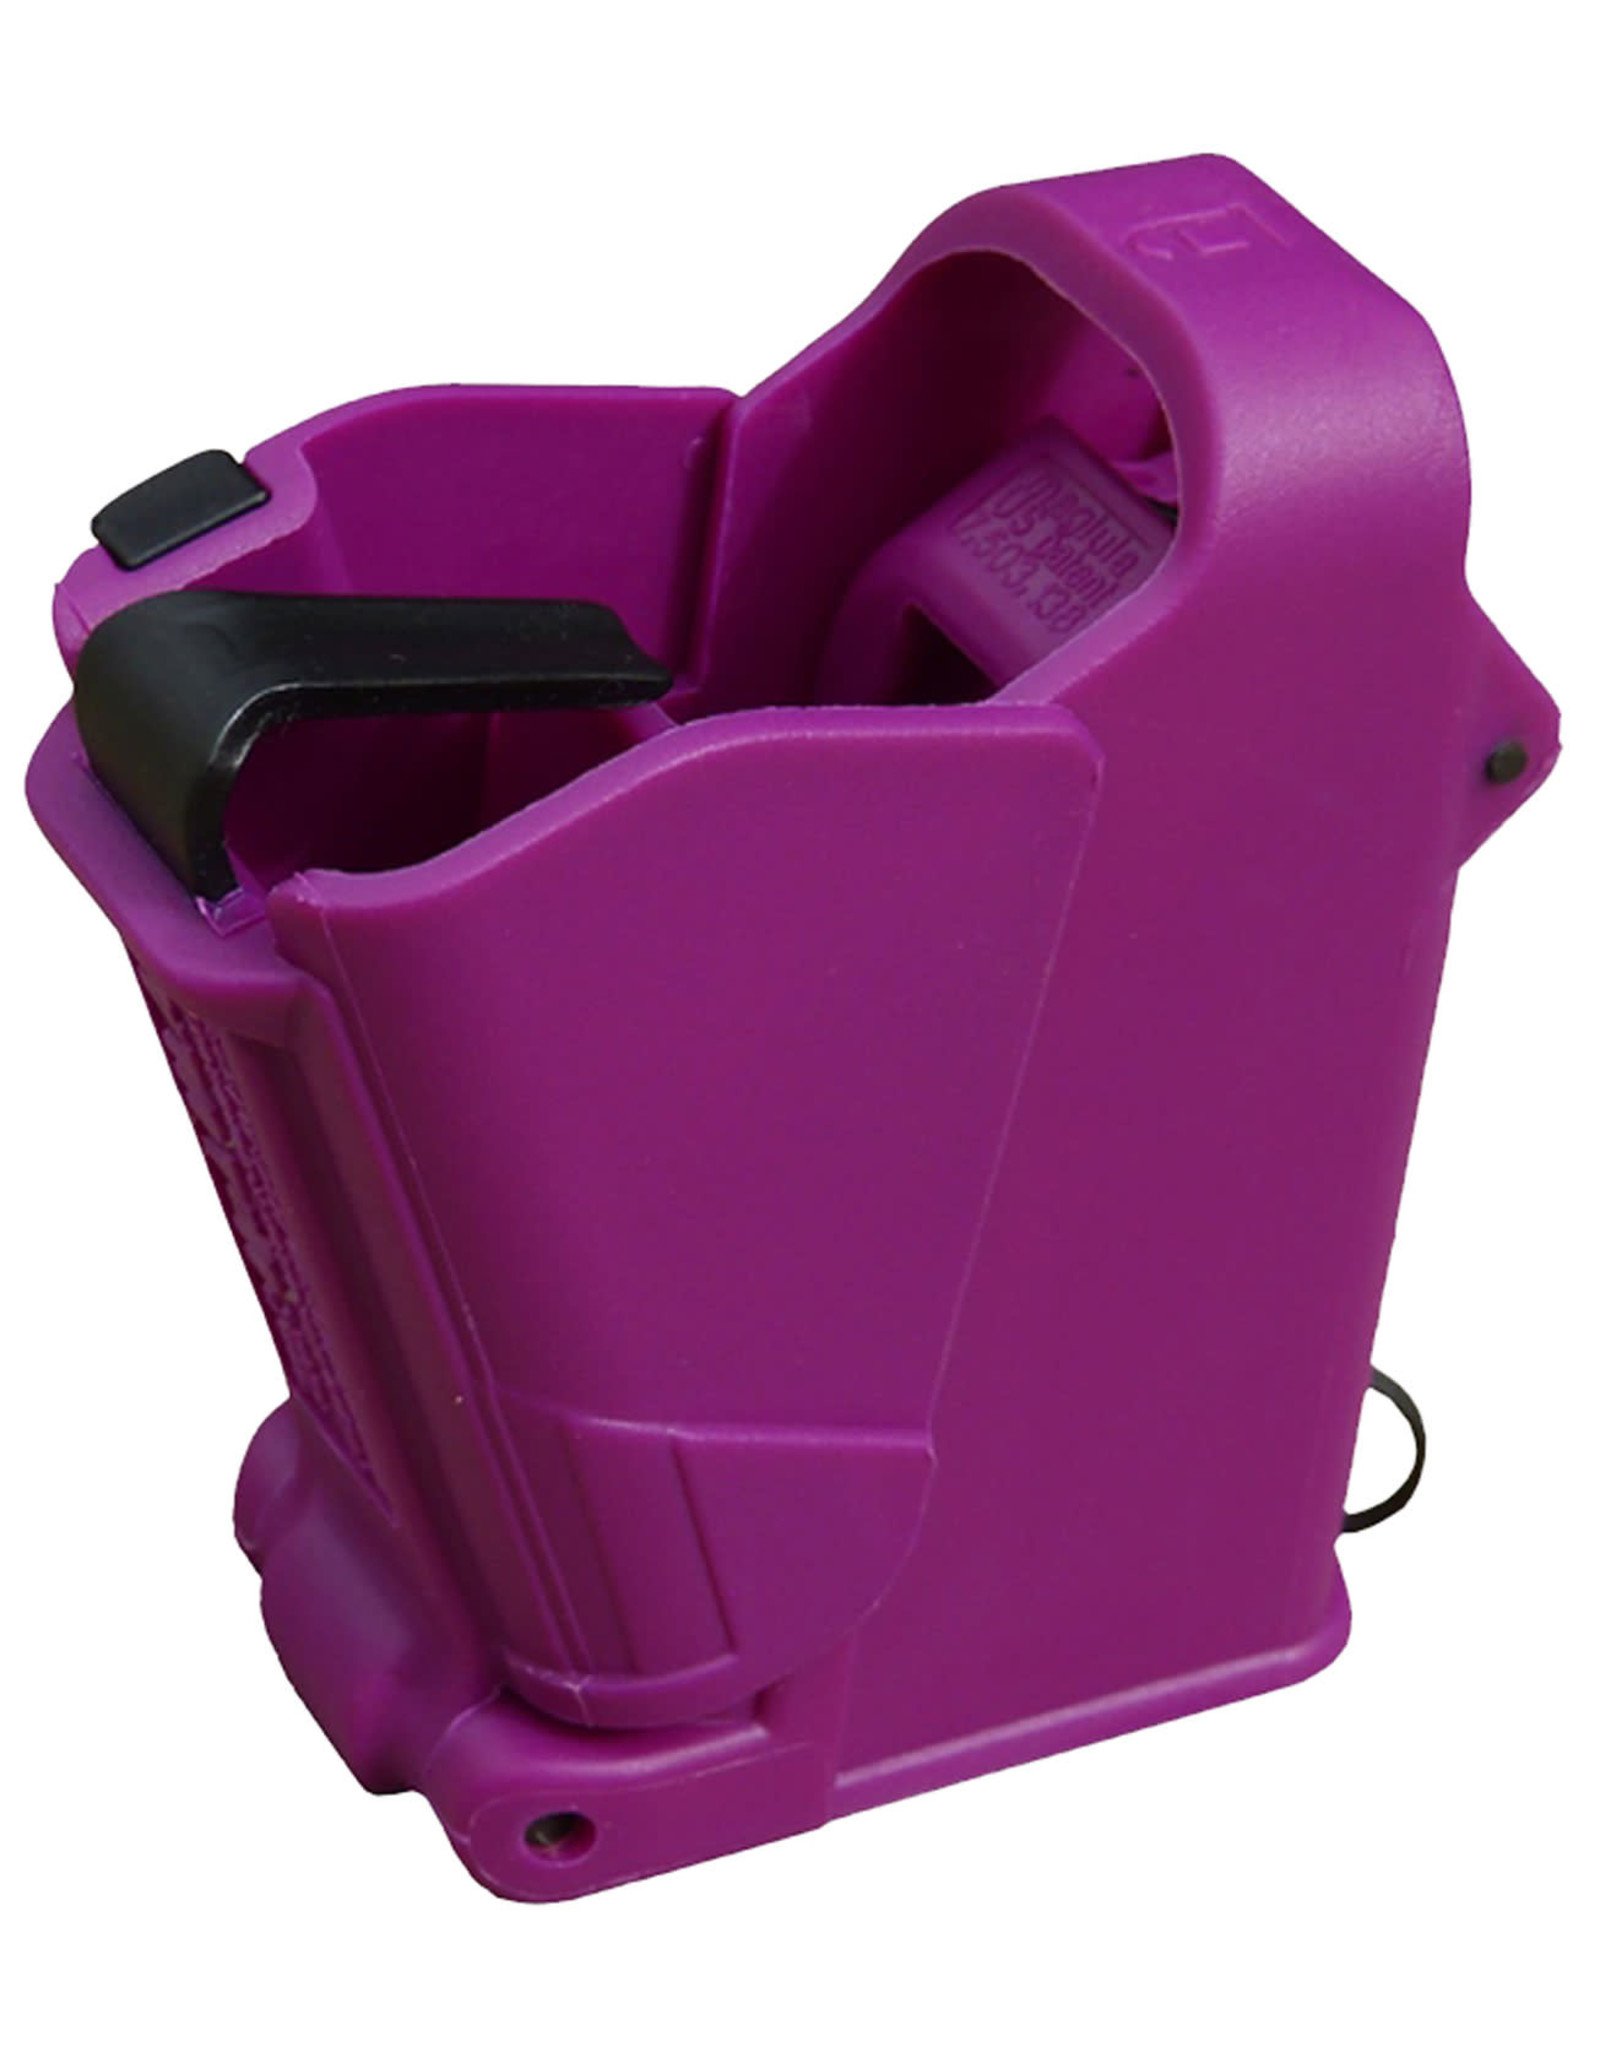 MAGLULA UpLula Universal Pistol Mag Loader - Purple